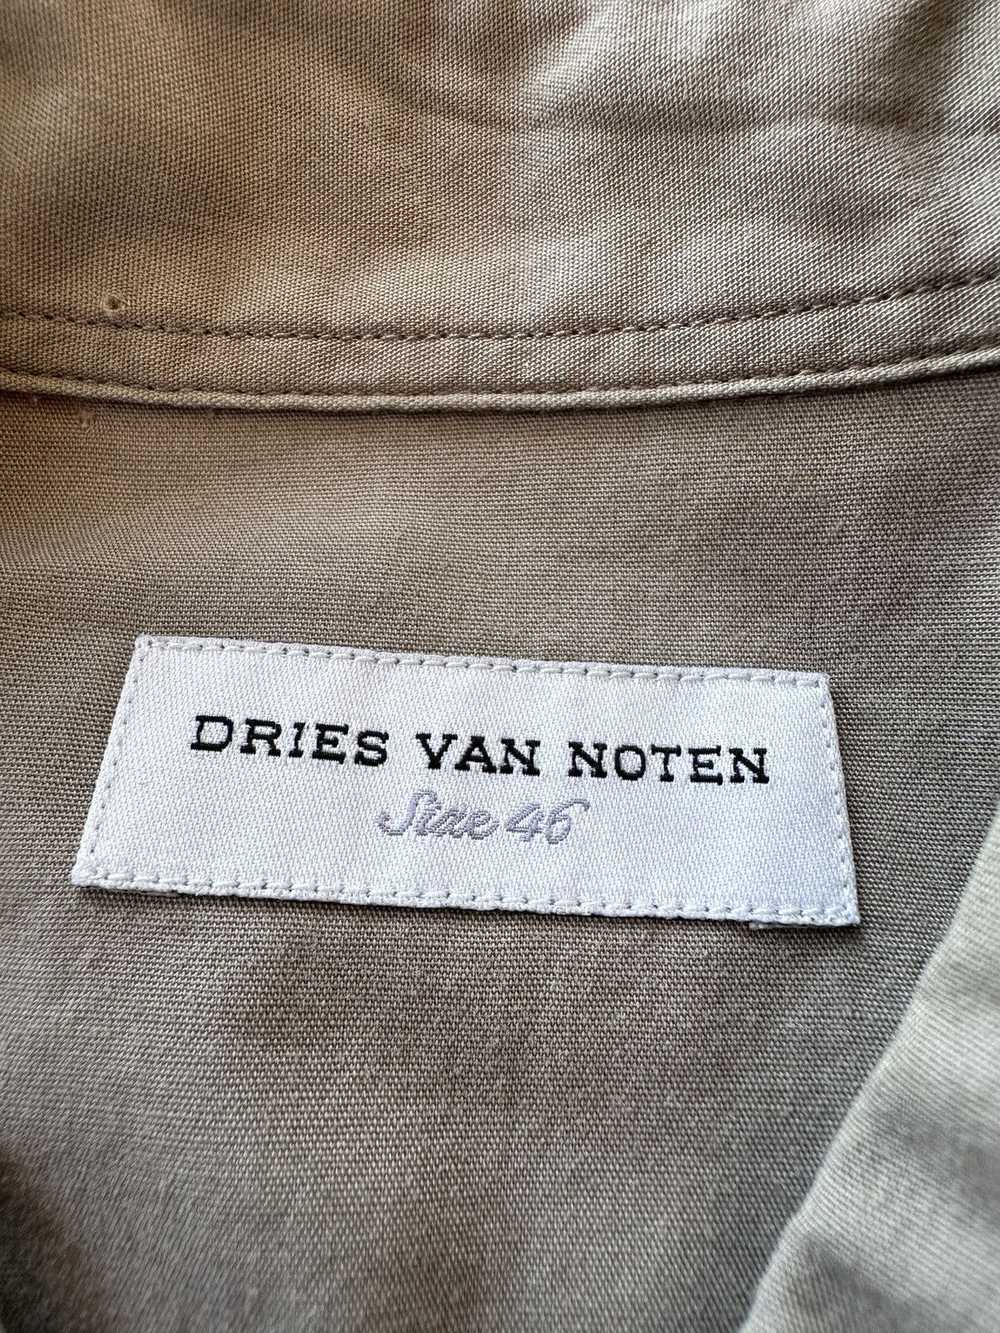 Dries Van Noten Dries Van Noten Button-Up Shirt - image 3